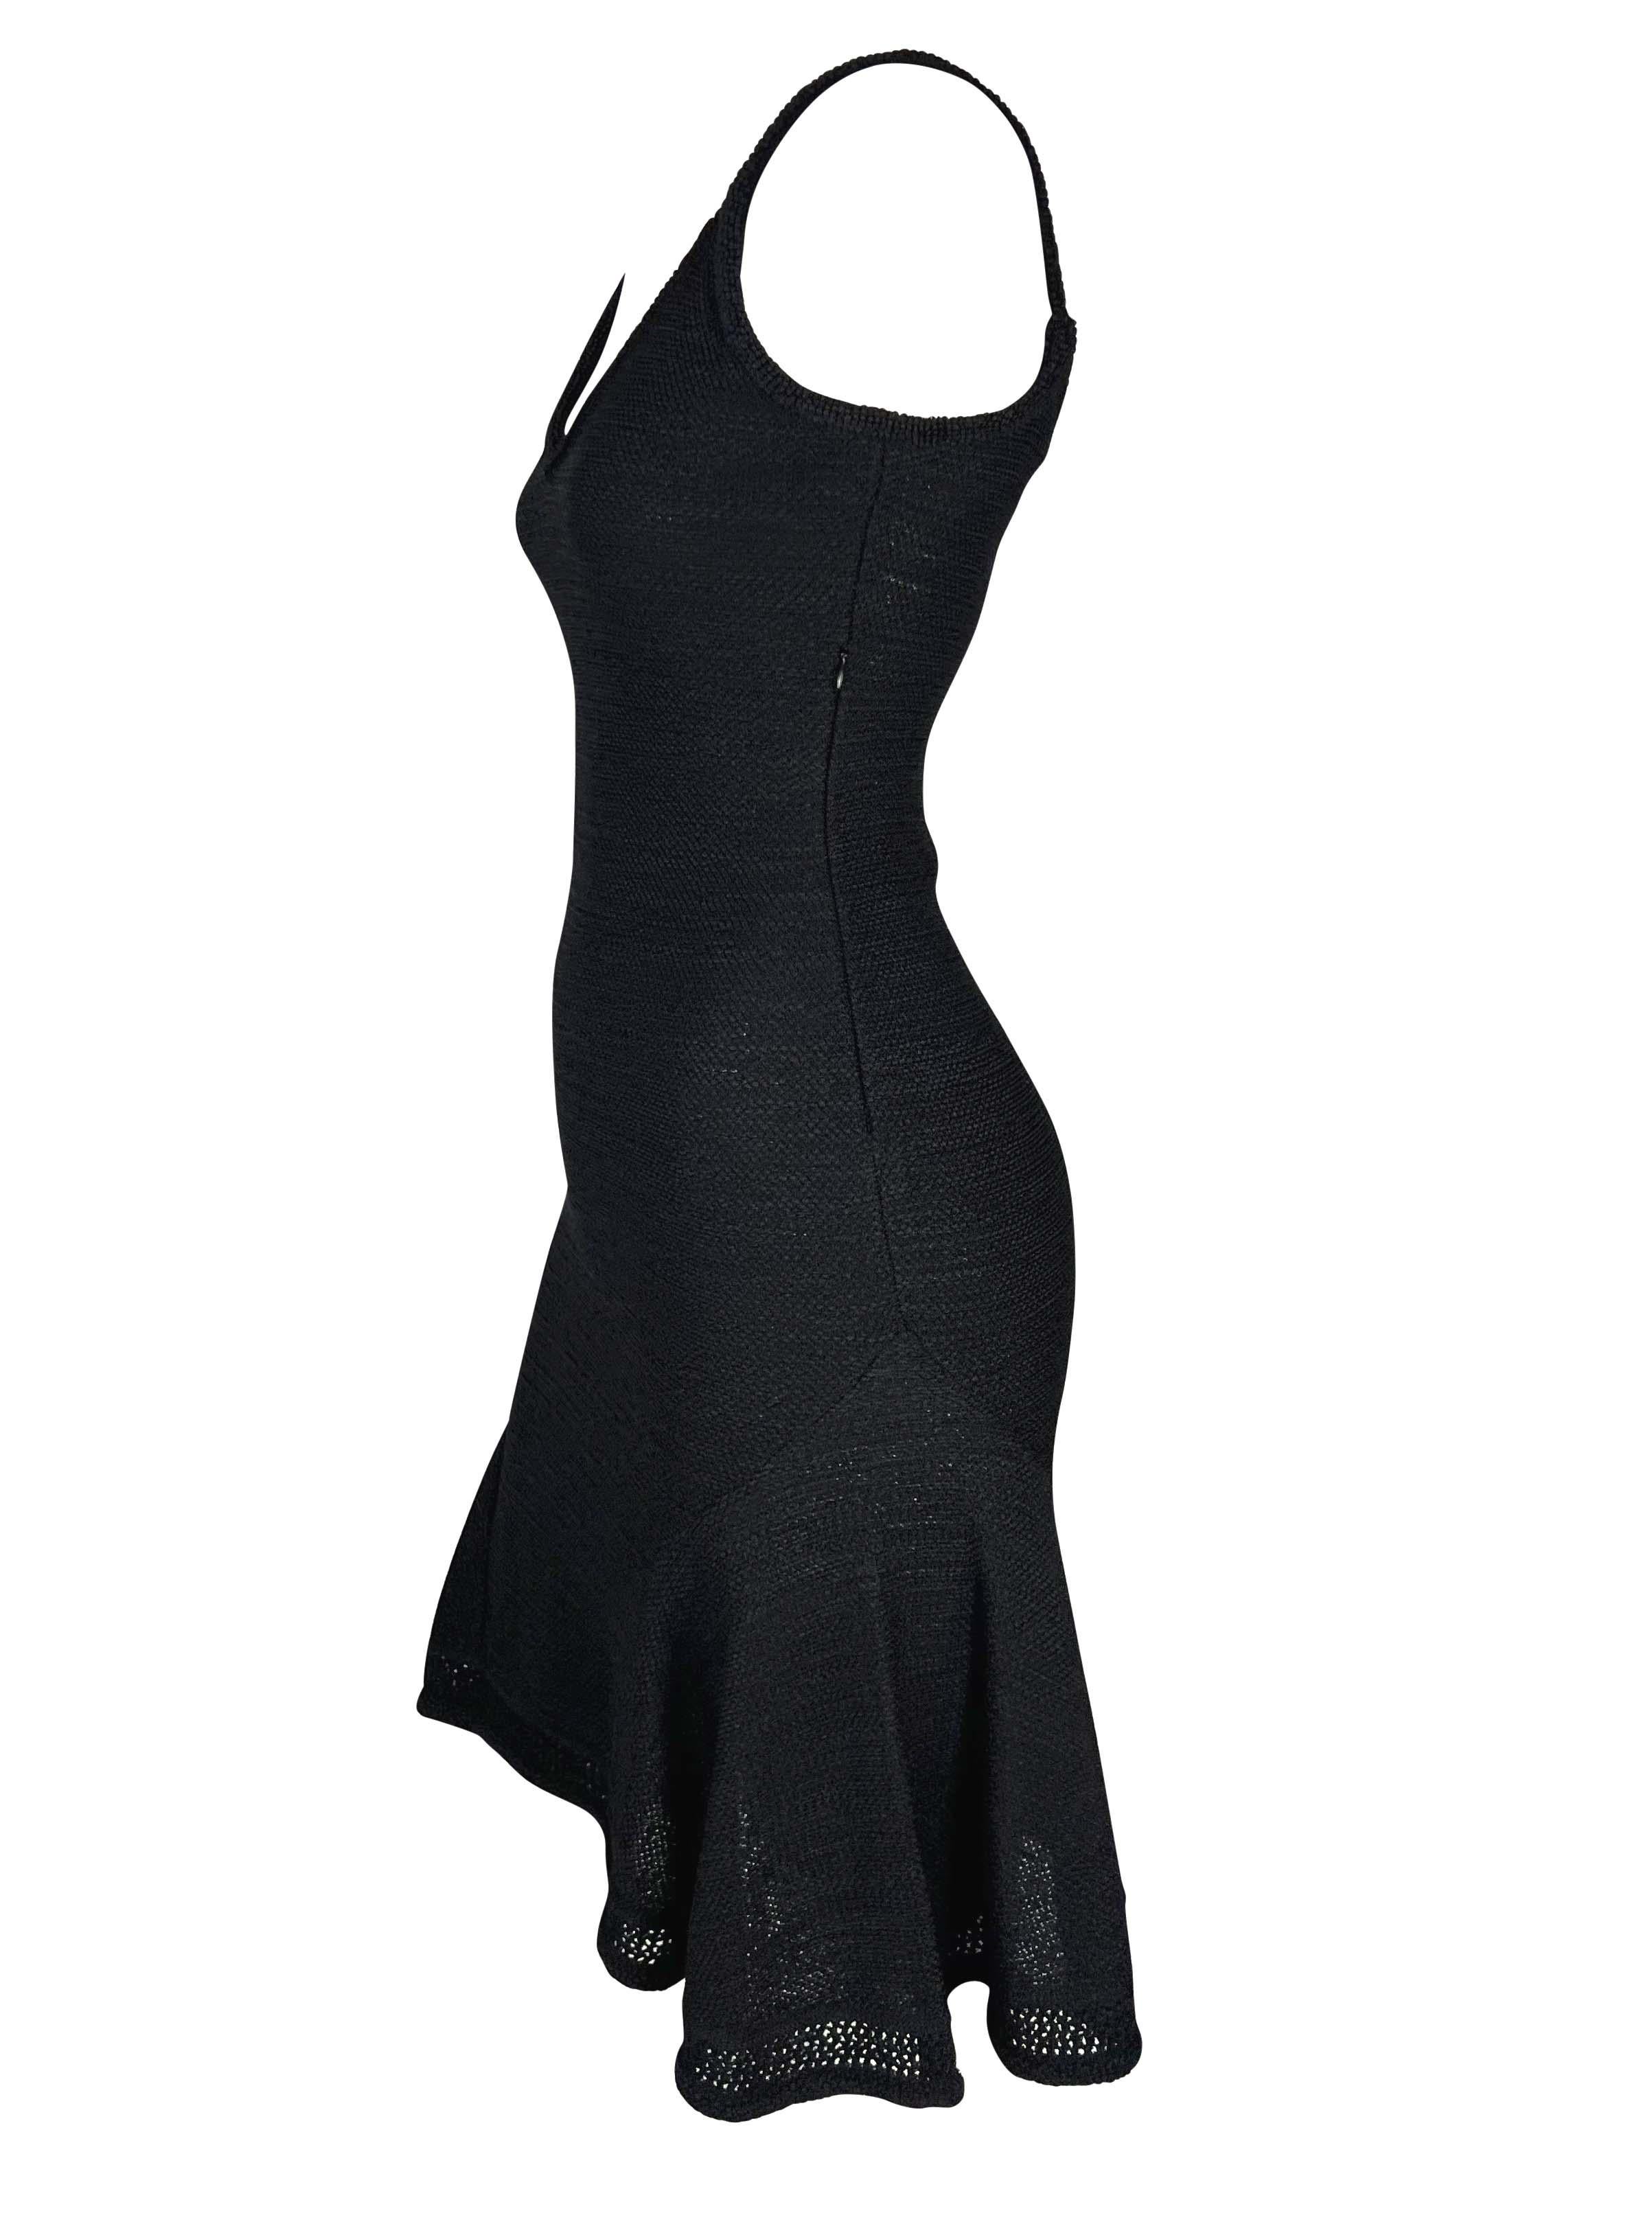 Présentation d'une robe pull John Galliano en maille noire. Issue de la collection printemps/été 1999 